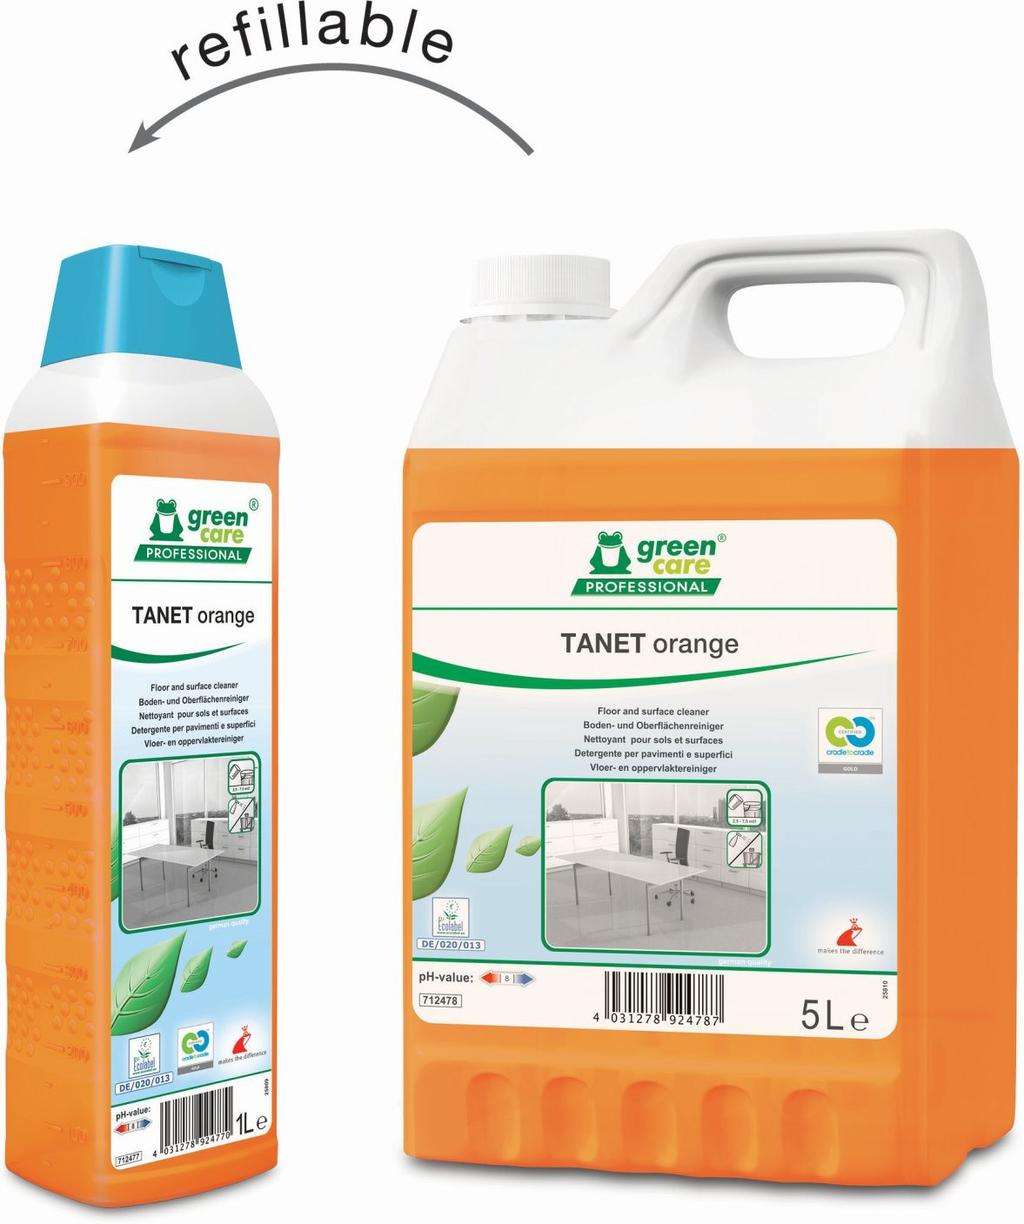 Kies uit S, M, L of XL Ons advies Reinigingsmiddel TANET ORANGE, vloer- en oppervlakkenreiniger Uitzonderlijke milieu-eigenschappen en een aangename sinaasappelgeur.